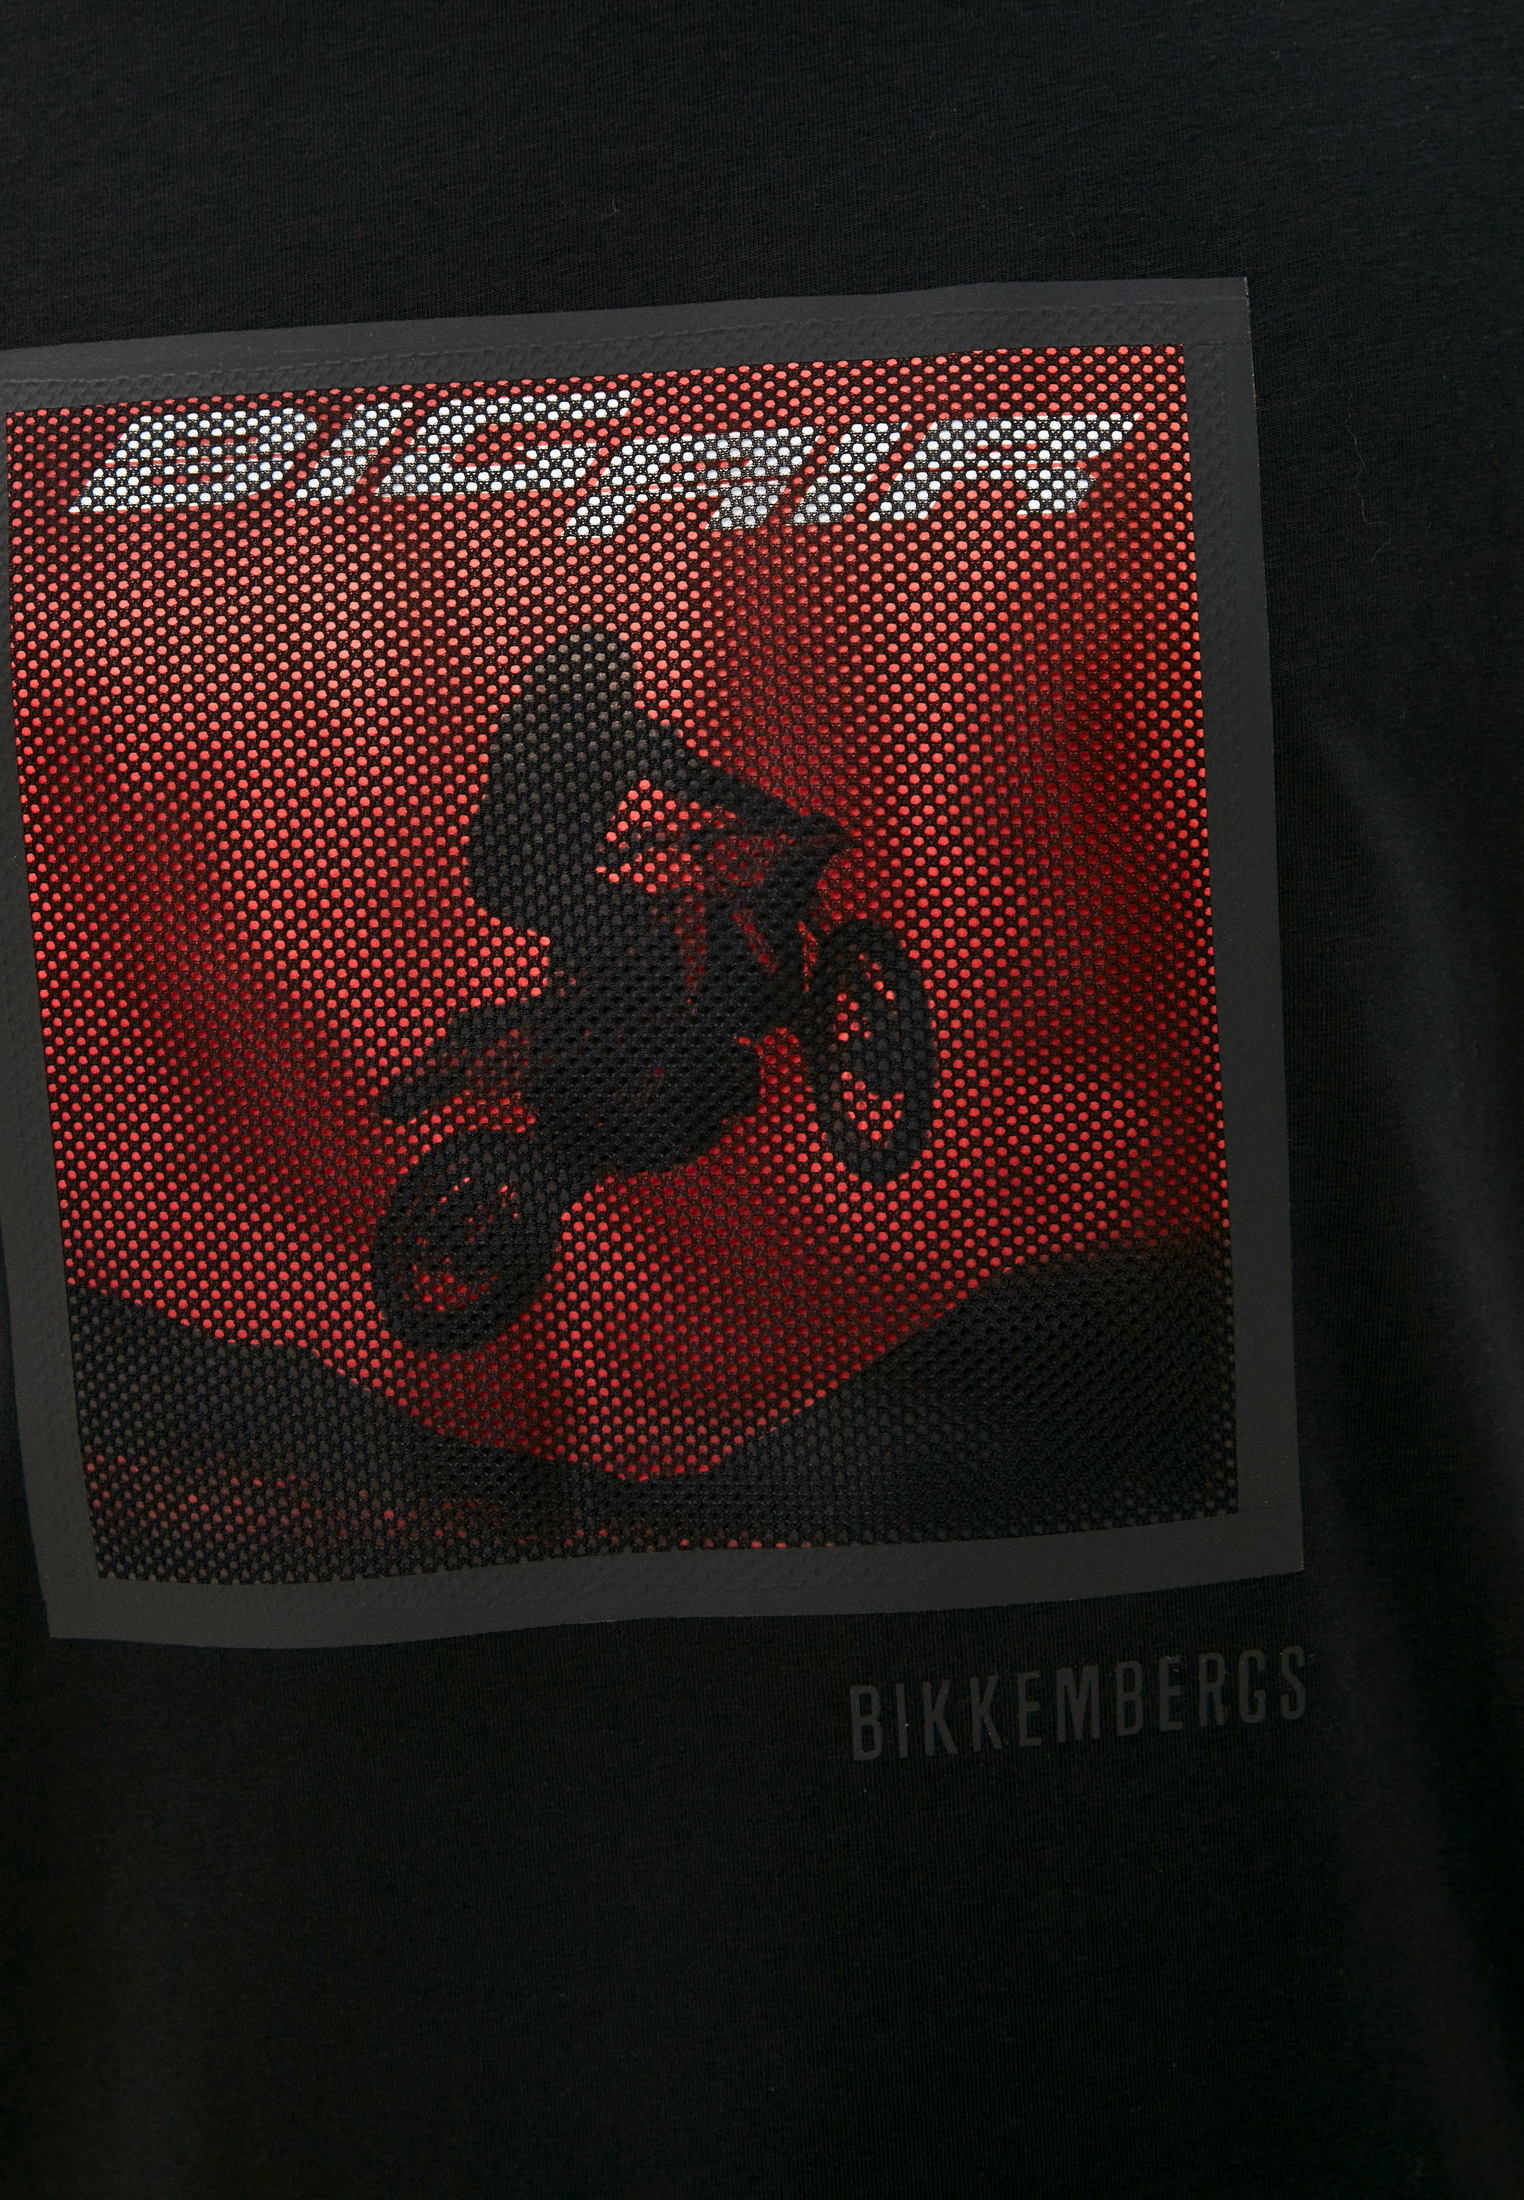 Мужская футболка Bikkembergs (Биккембергс) C 7 001 2F E 1951: изображение 5